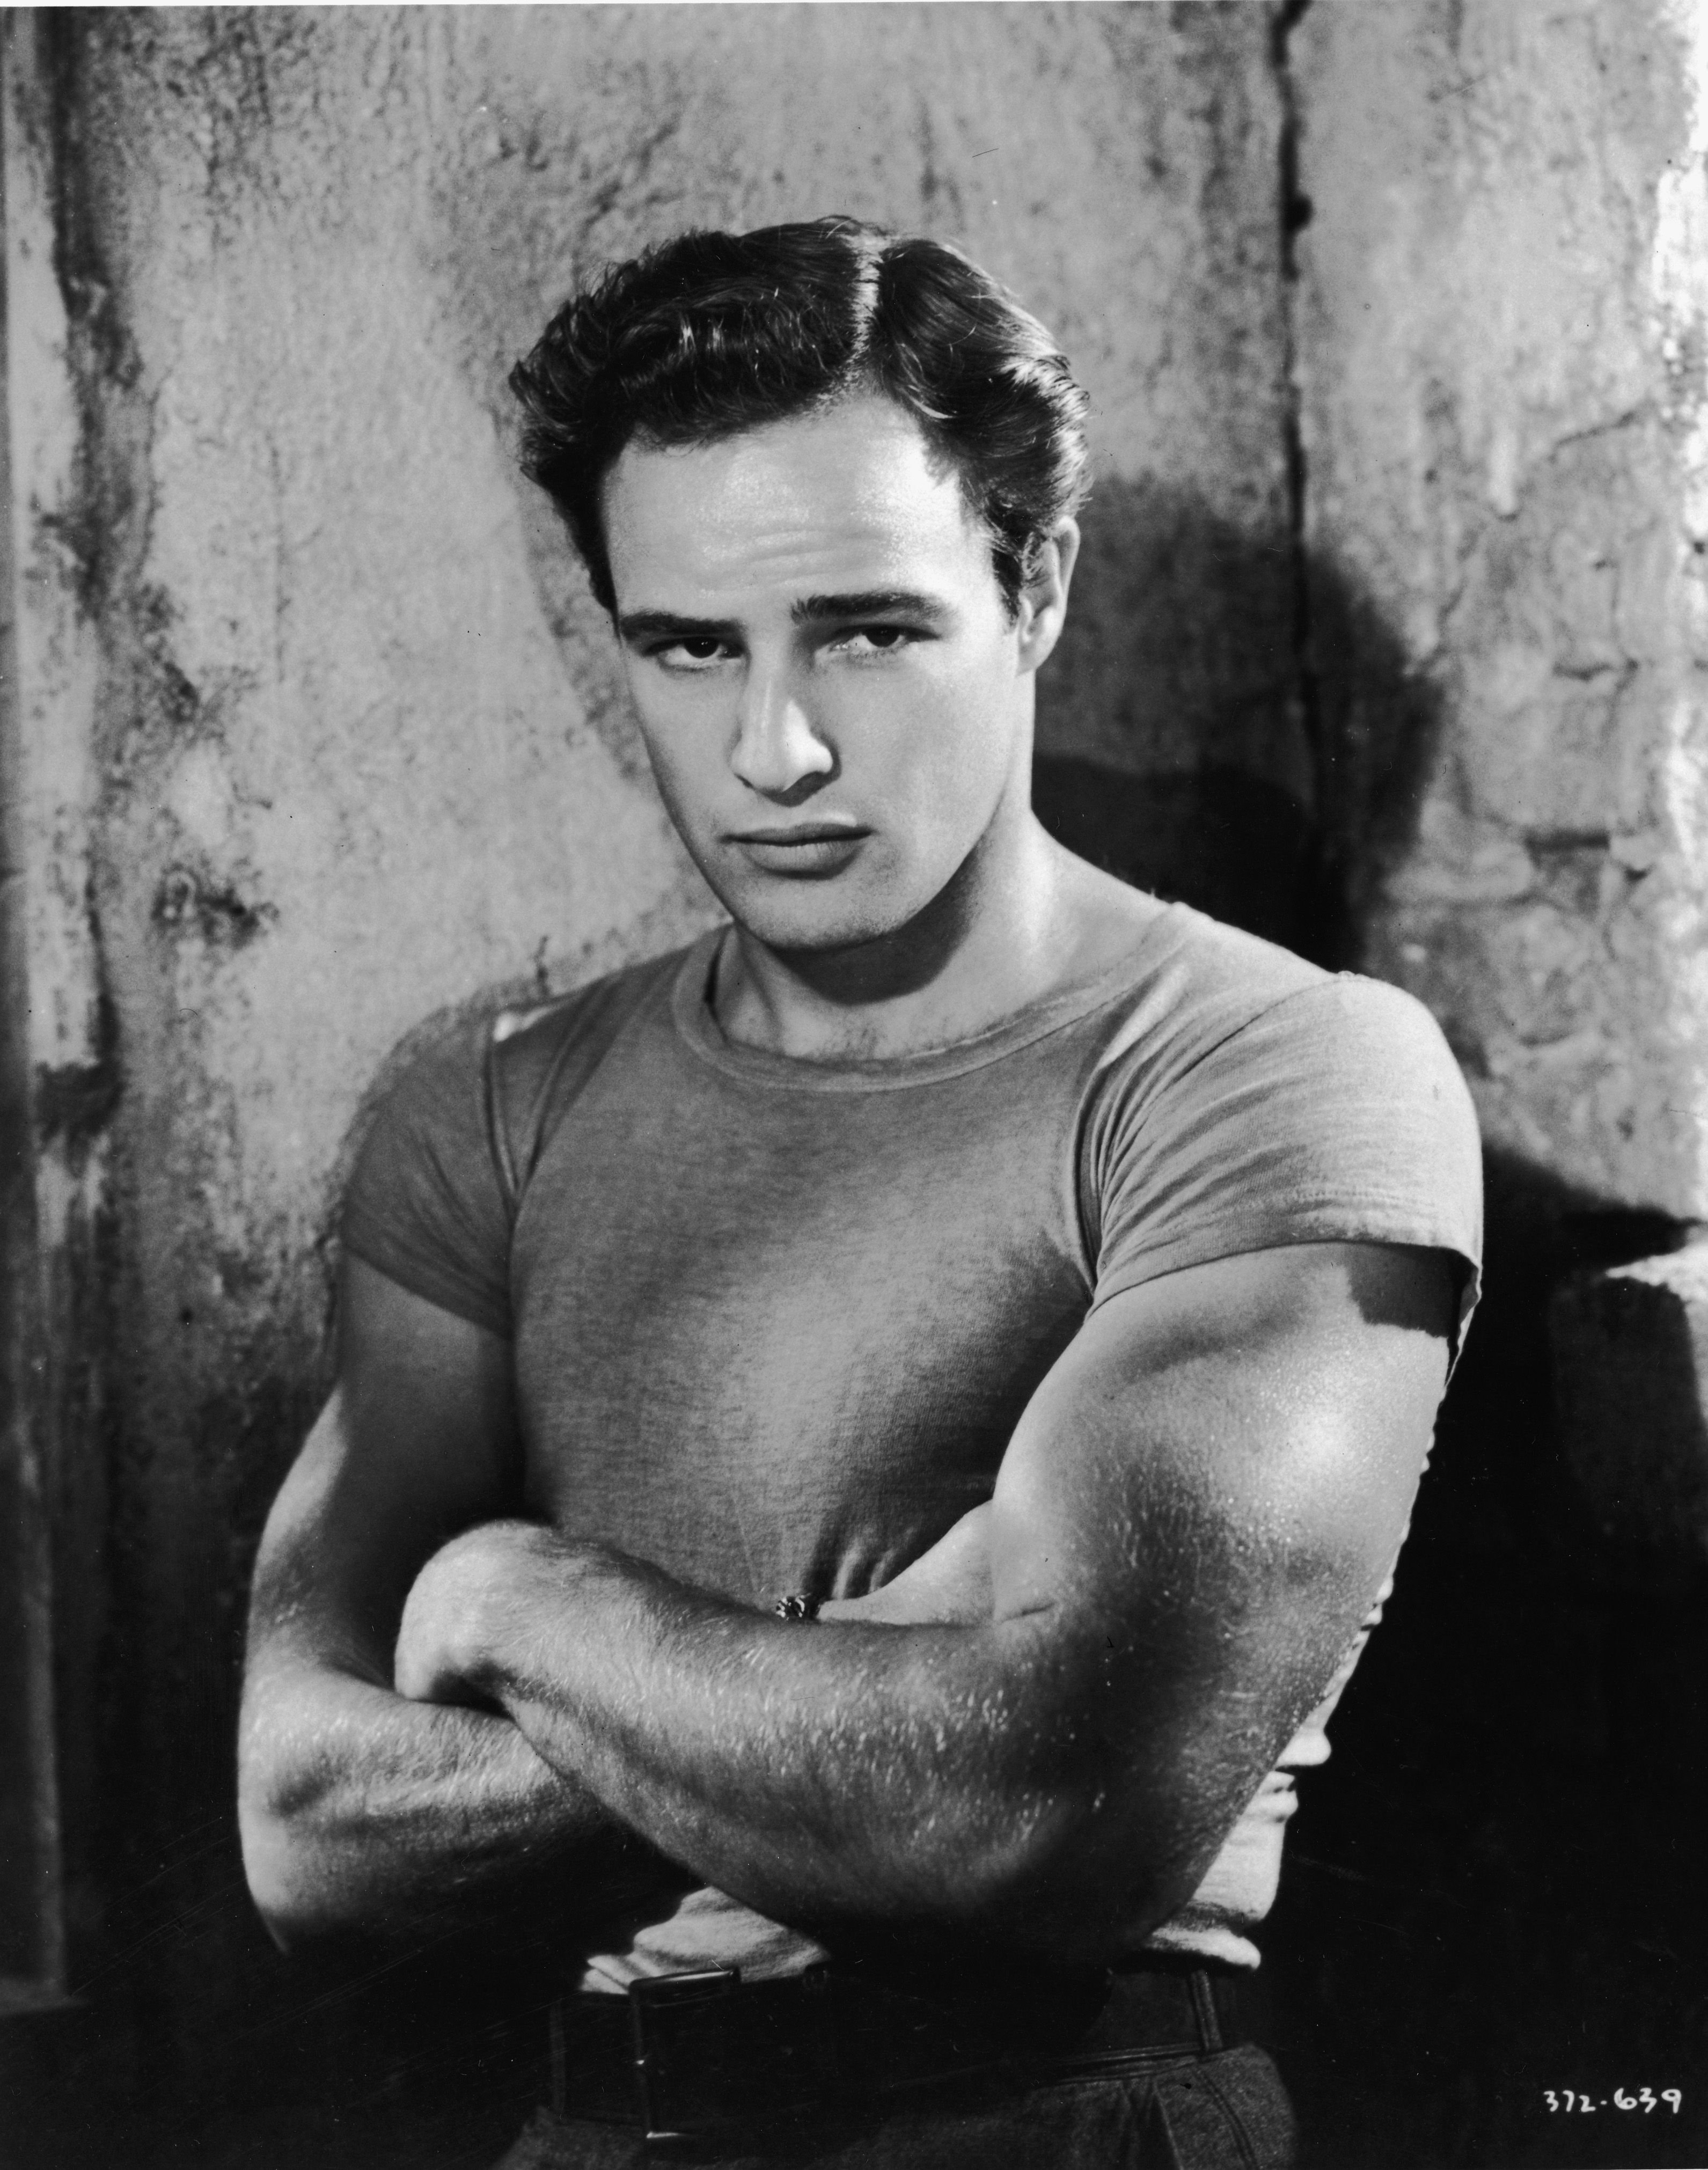 Werbe-Studio-Porträt von Marlon Brando aus dem Jahr 1951 | Quelle: Getty Images